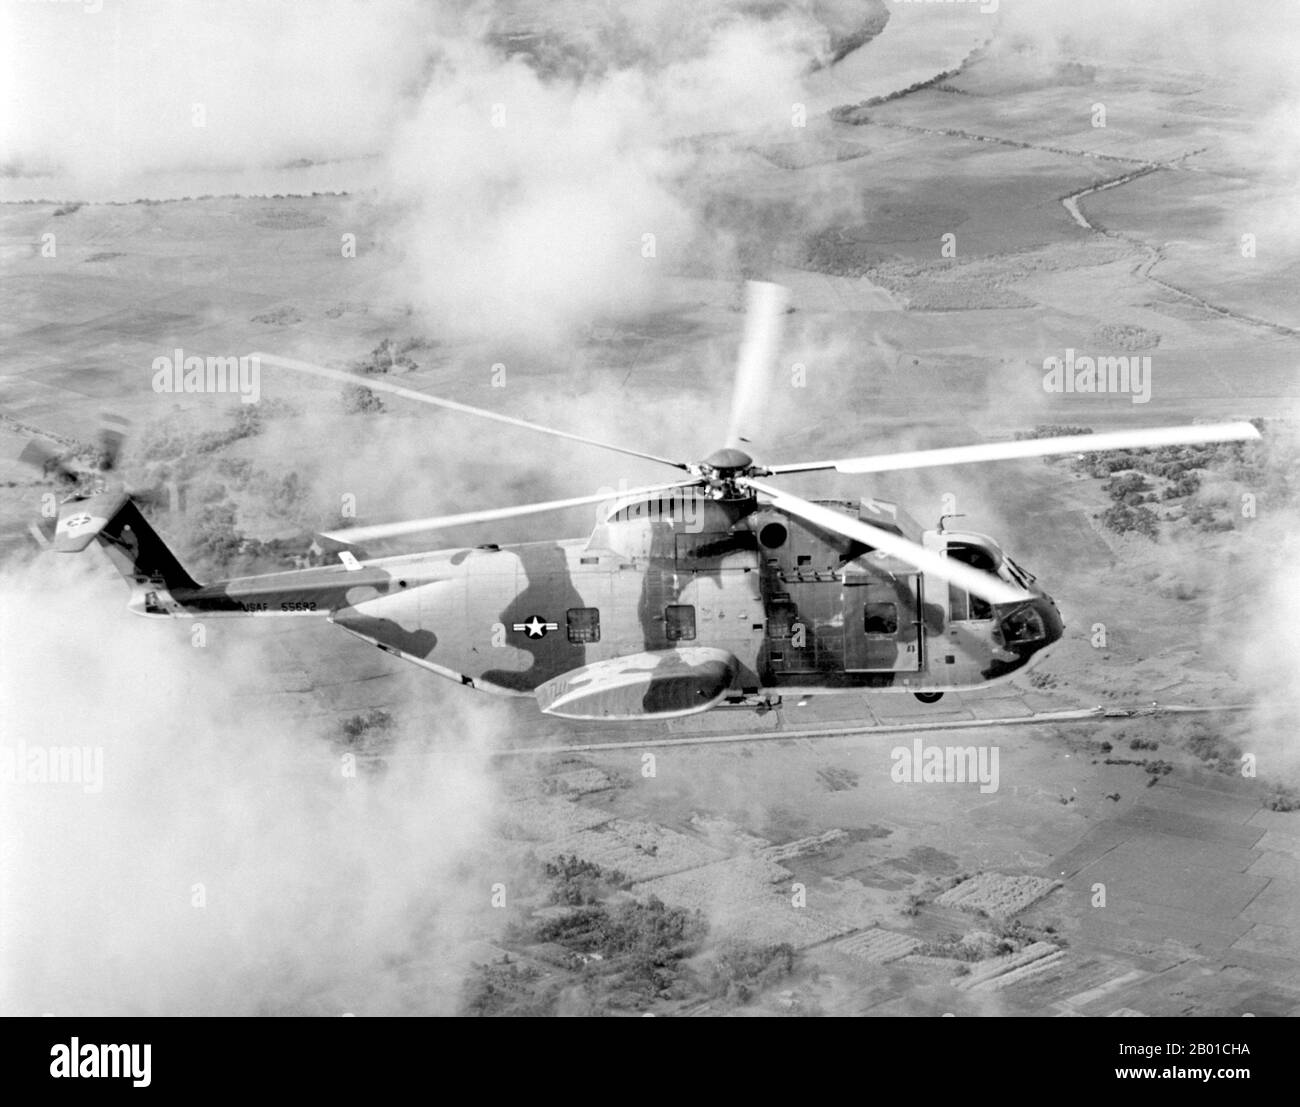 Vietnam : un américain Air Force Sikorsky CH-3C Jolly Green Giant hélicoptère du 3rd Aerospace Rescue and Recovery Squadron au Vietnam, 1967. La deuxième guerre d'Indochine, connue en Amérique sous le nom de guerre du Vietnam, a été un conflit militaire de l'époque de la Guerre froide qui s'est produit au Vietnam, au Laos et au Cambodge du 1 novembre 1955 à la chute de Saigon le 30 avril 1975. Cette guerre a suivi la première Guerre d'Indochine et a été menée entre le Nord du Vietnam, soutenu par ses alliés communistes, et le gouvernement du Sud Vietnam, soutenu par les États-Unis et d'autres nations anticommunistes. Banque D'Images